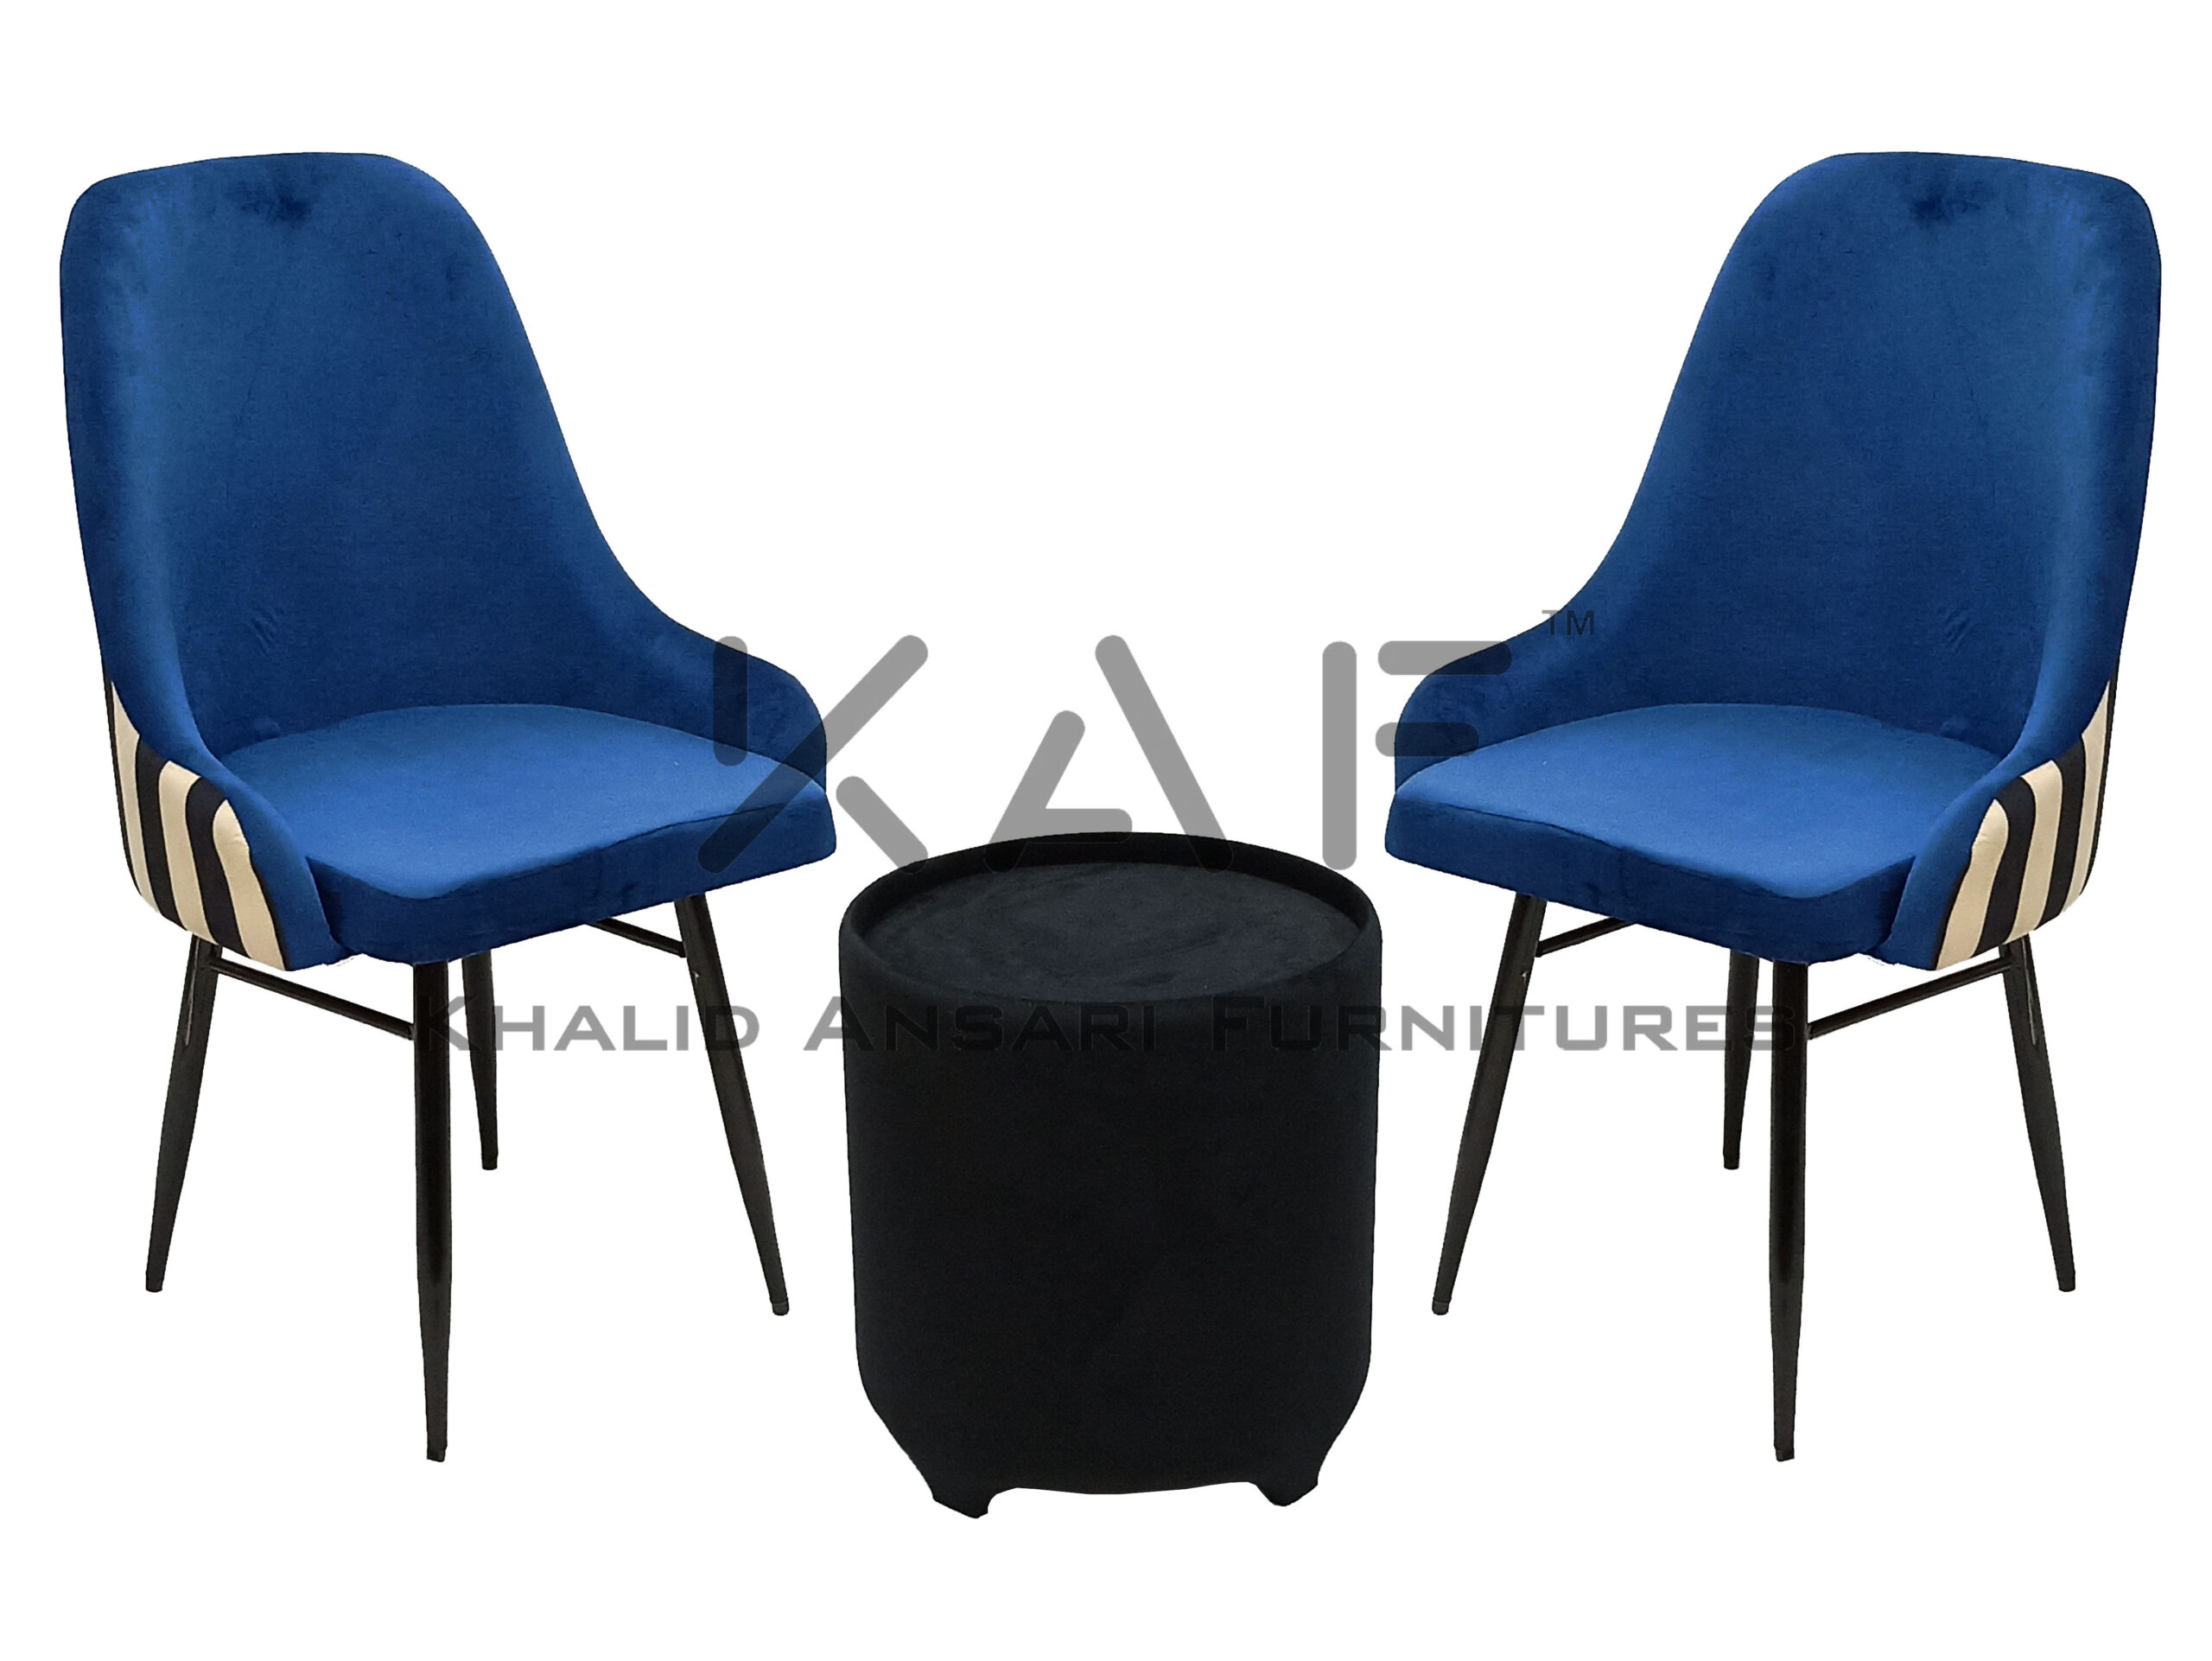 Bed Room Premium Chair High Back Arm Blue Velvet set with Black Velvet Tea Table - 2 Chairs + 1 Table